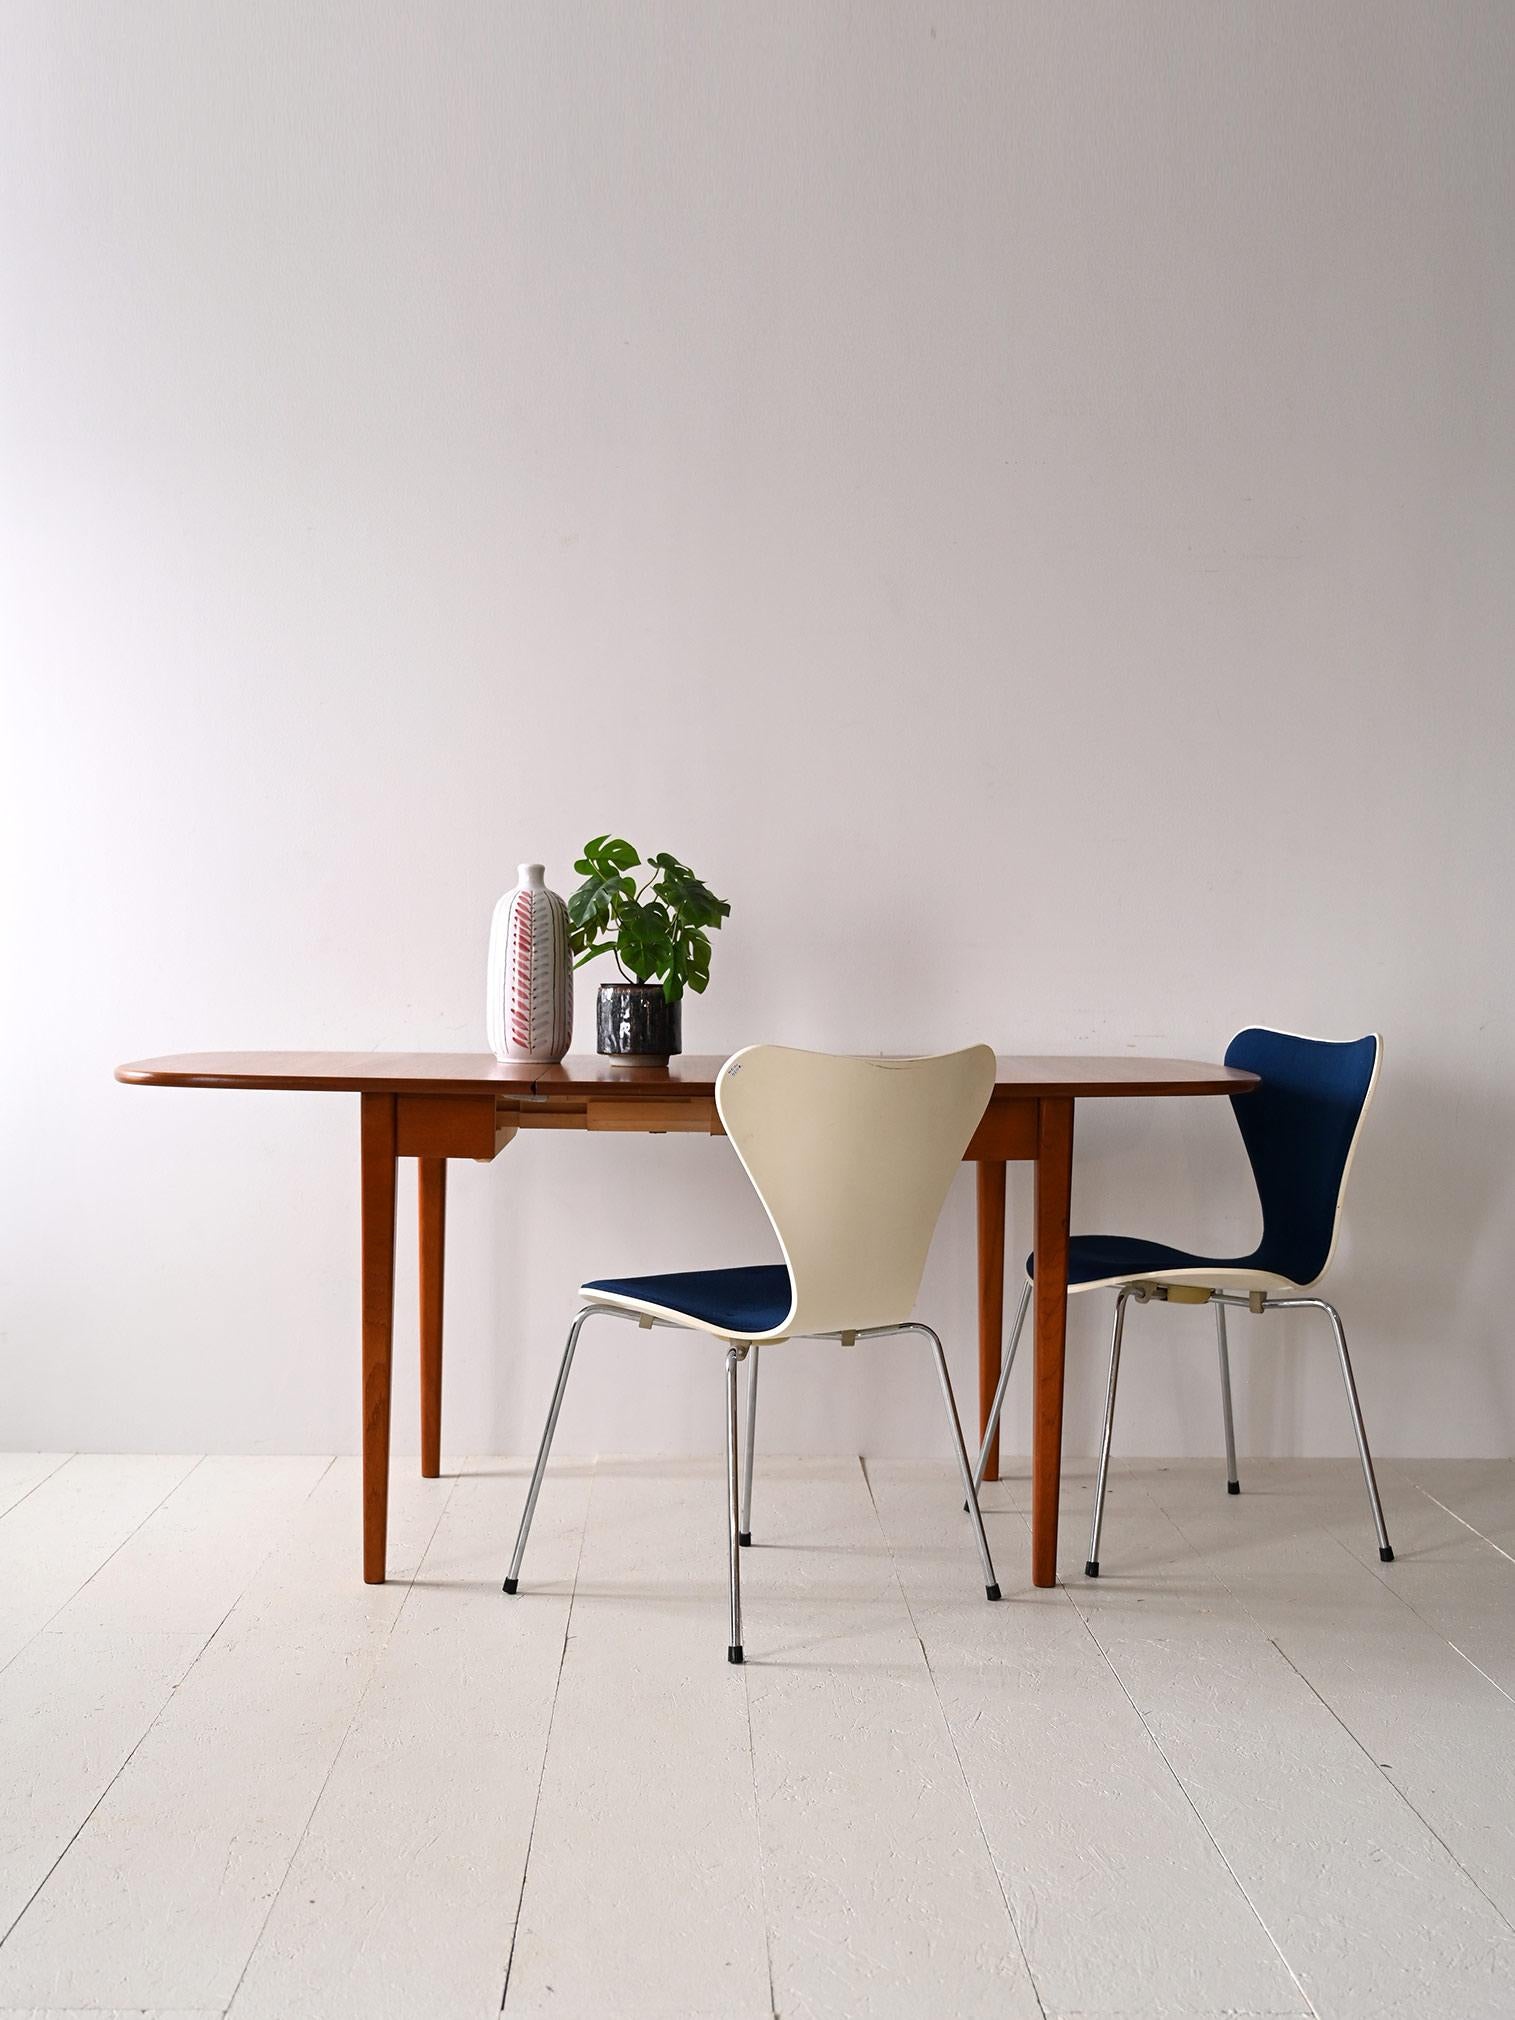 Table pliante avec un plateau aux coins arrondis.

Ce meuble incarne l'essence du design scandinave qui allie esthétique et fonctionnalité. Grâce à sa capacité à s'ouvrir en cas de besoin, il est également parfait pour les petites pièces.
Il se